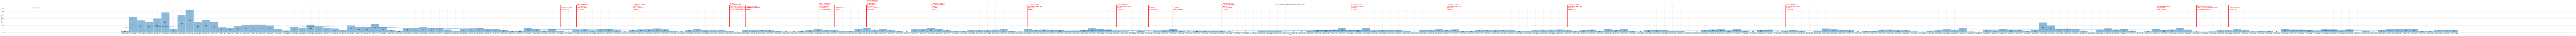 Гистограмма, показывающая количество предложений недвижимости Севастополя по дням c 2022-01-01 по 2023-06-01